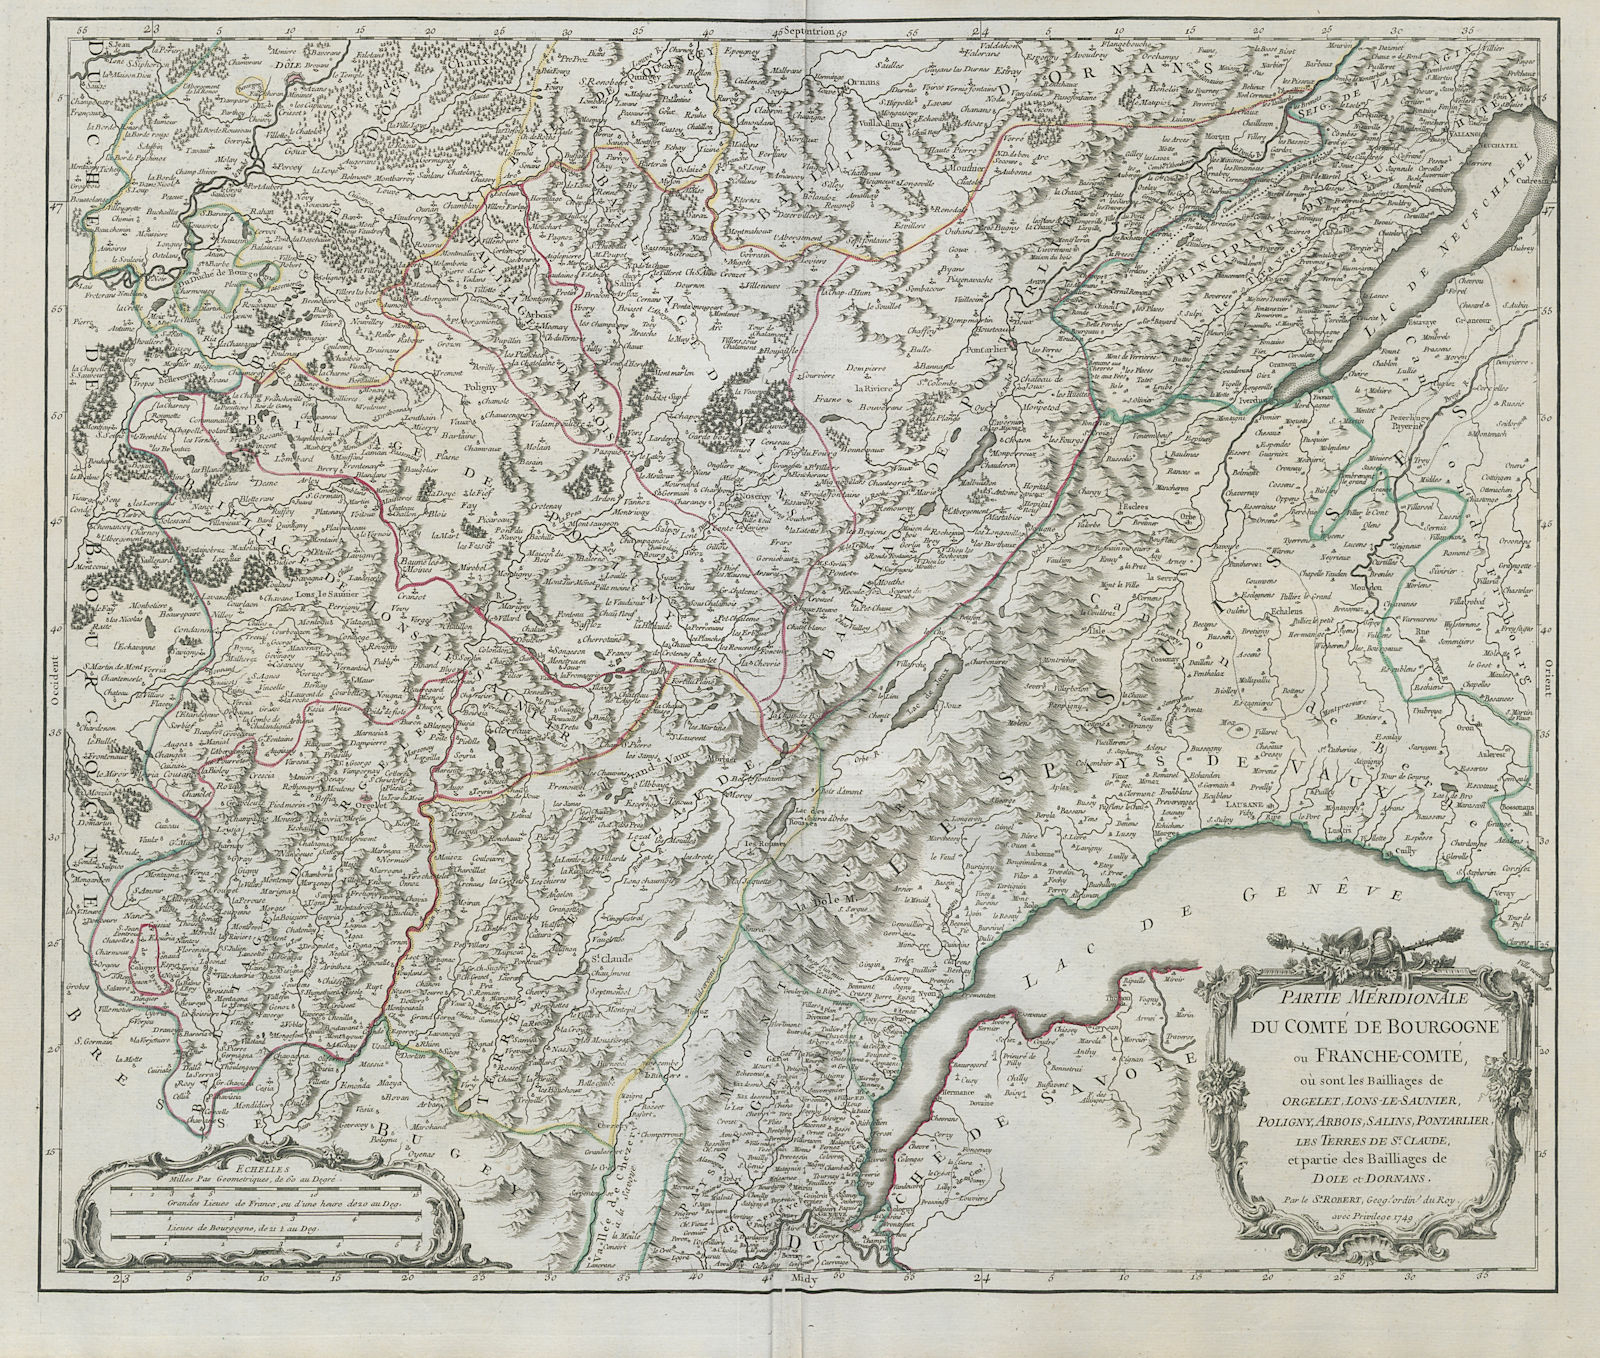 Associate Product "Partie Méridionale du Comté de Bourgogne ou Franche-Comté". VAUGONDY 1749 map